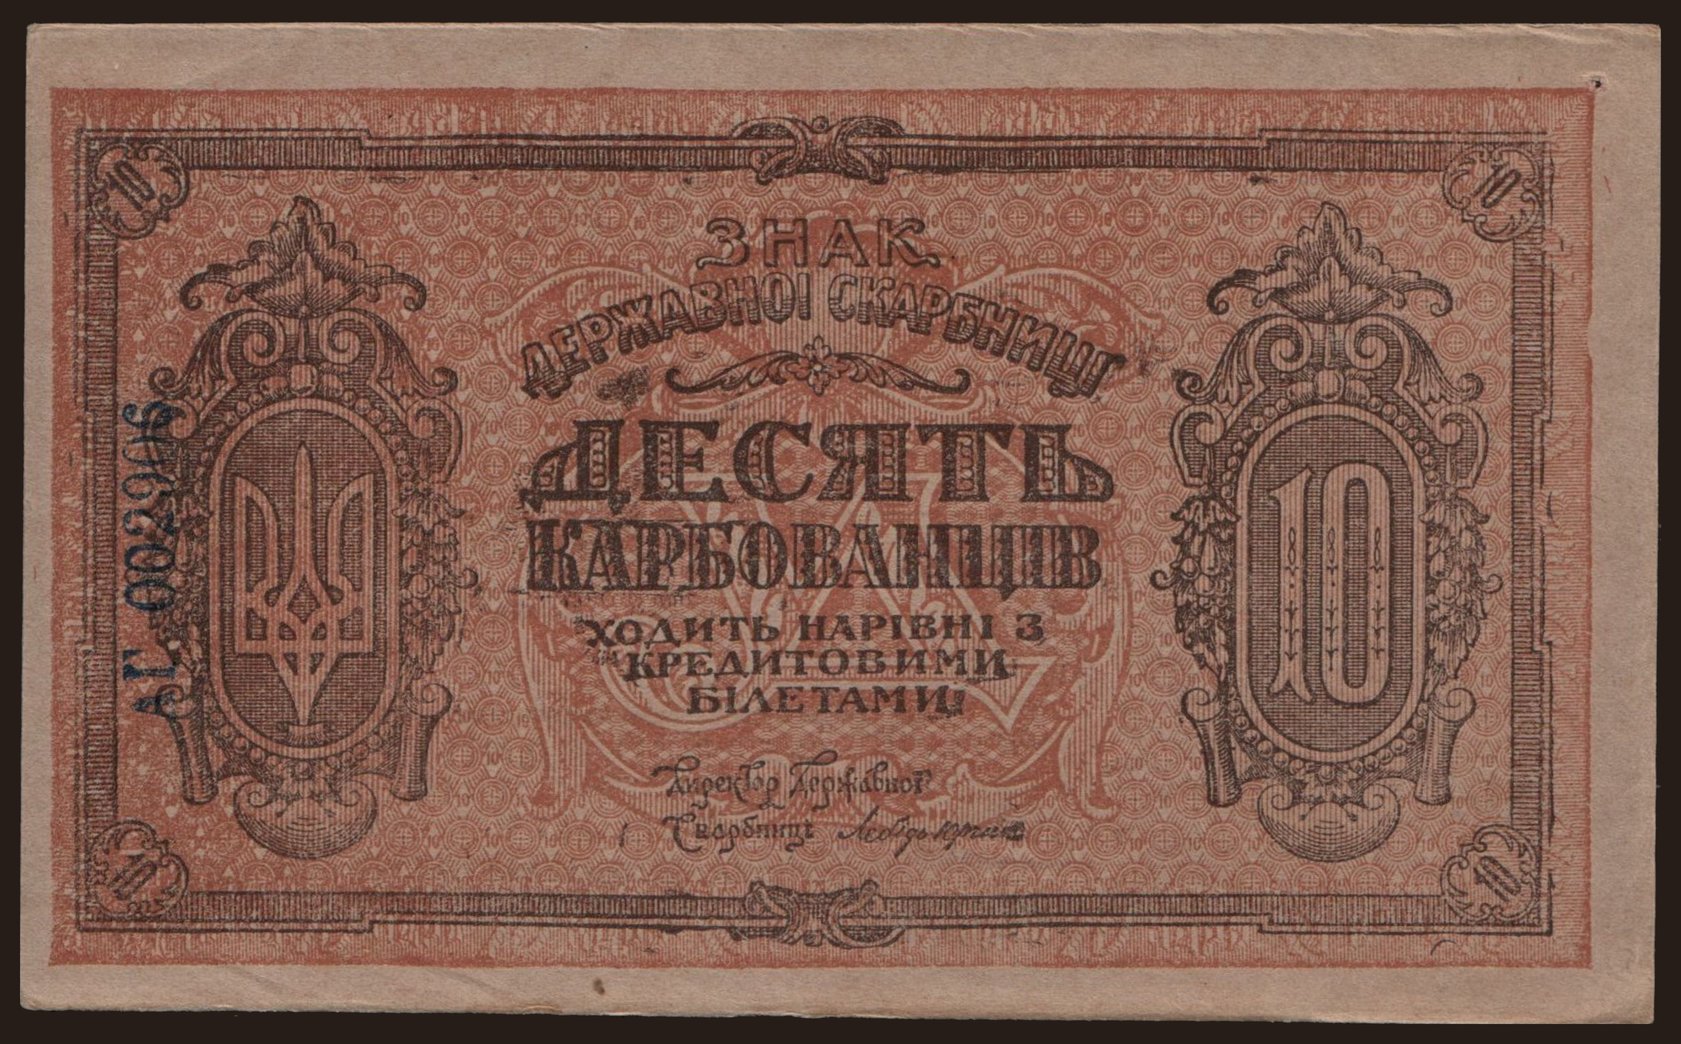 10 karbovantsiv, 1919